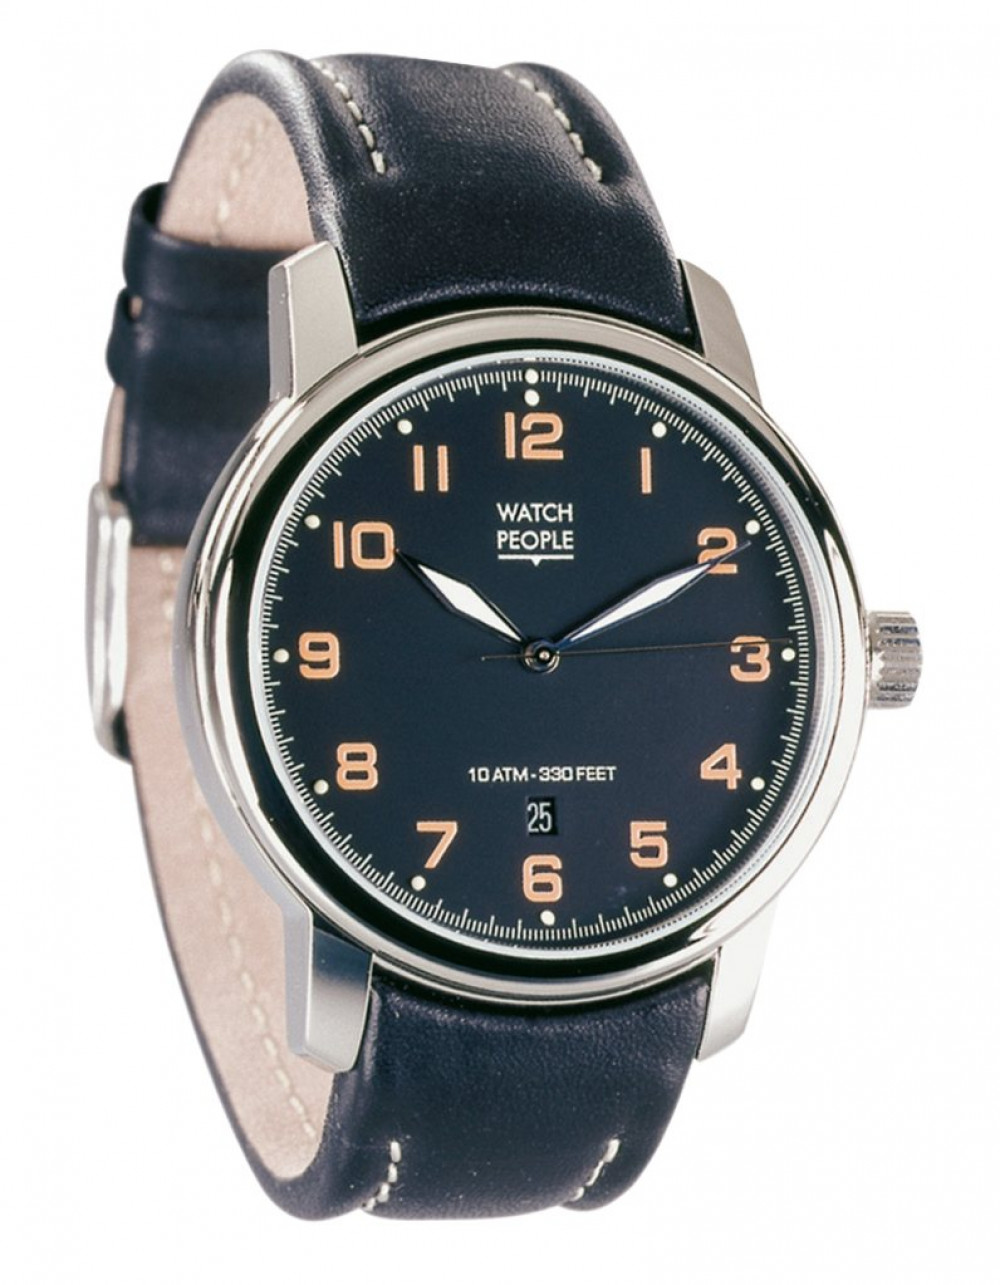 Zegarek firmy Watchpeople, model Kreon